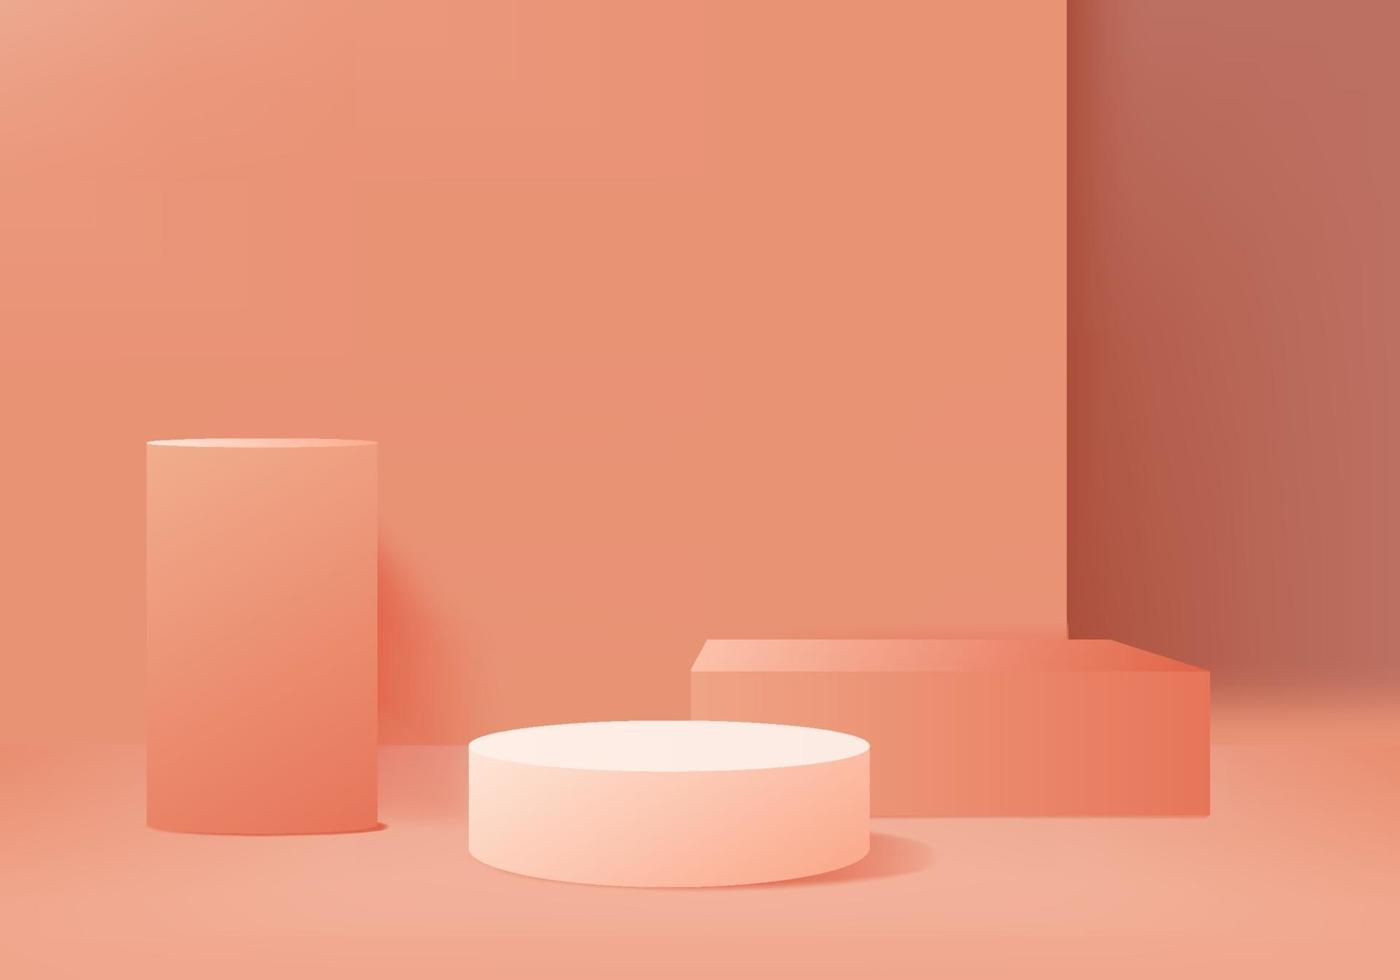 3D bakgrunds produktvisning podium scen med geometrisk plattform bakgrund vektor 3D-rendering med podium stativ för att visa kosmetiska produkter scen showcase på piedestal orange studio